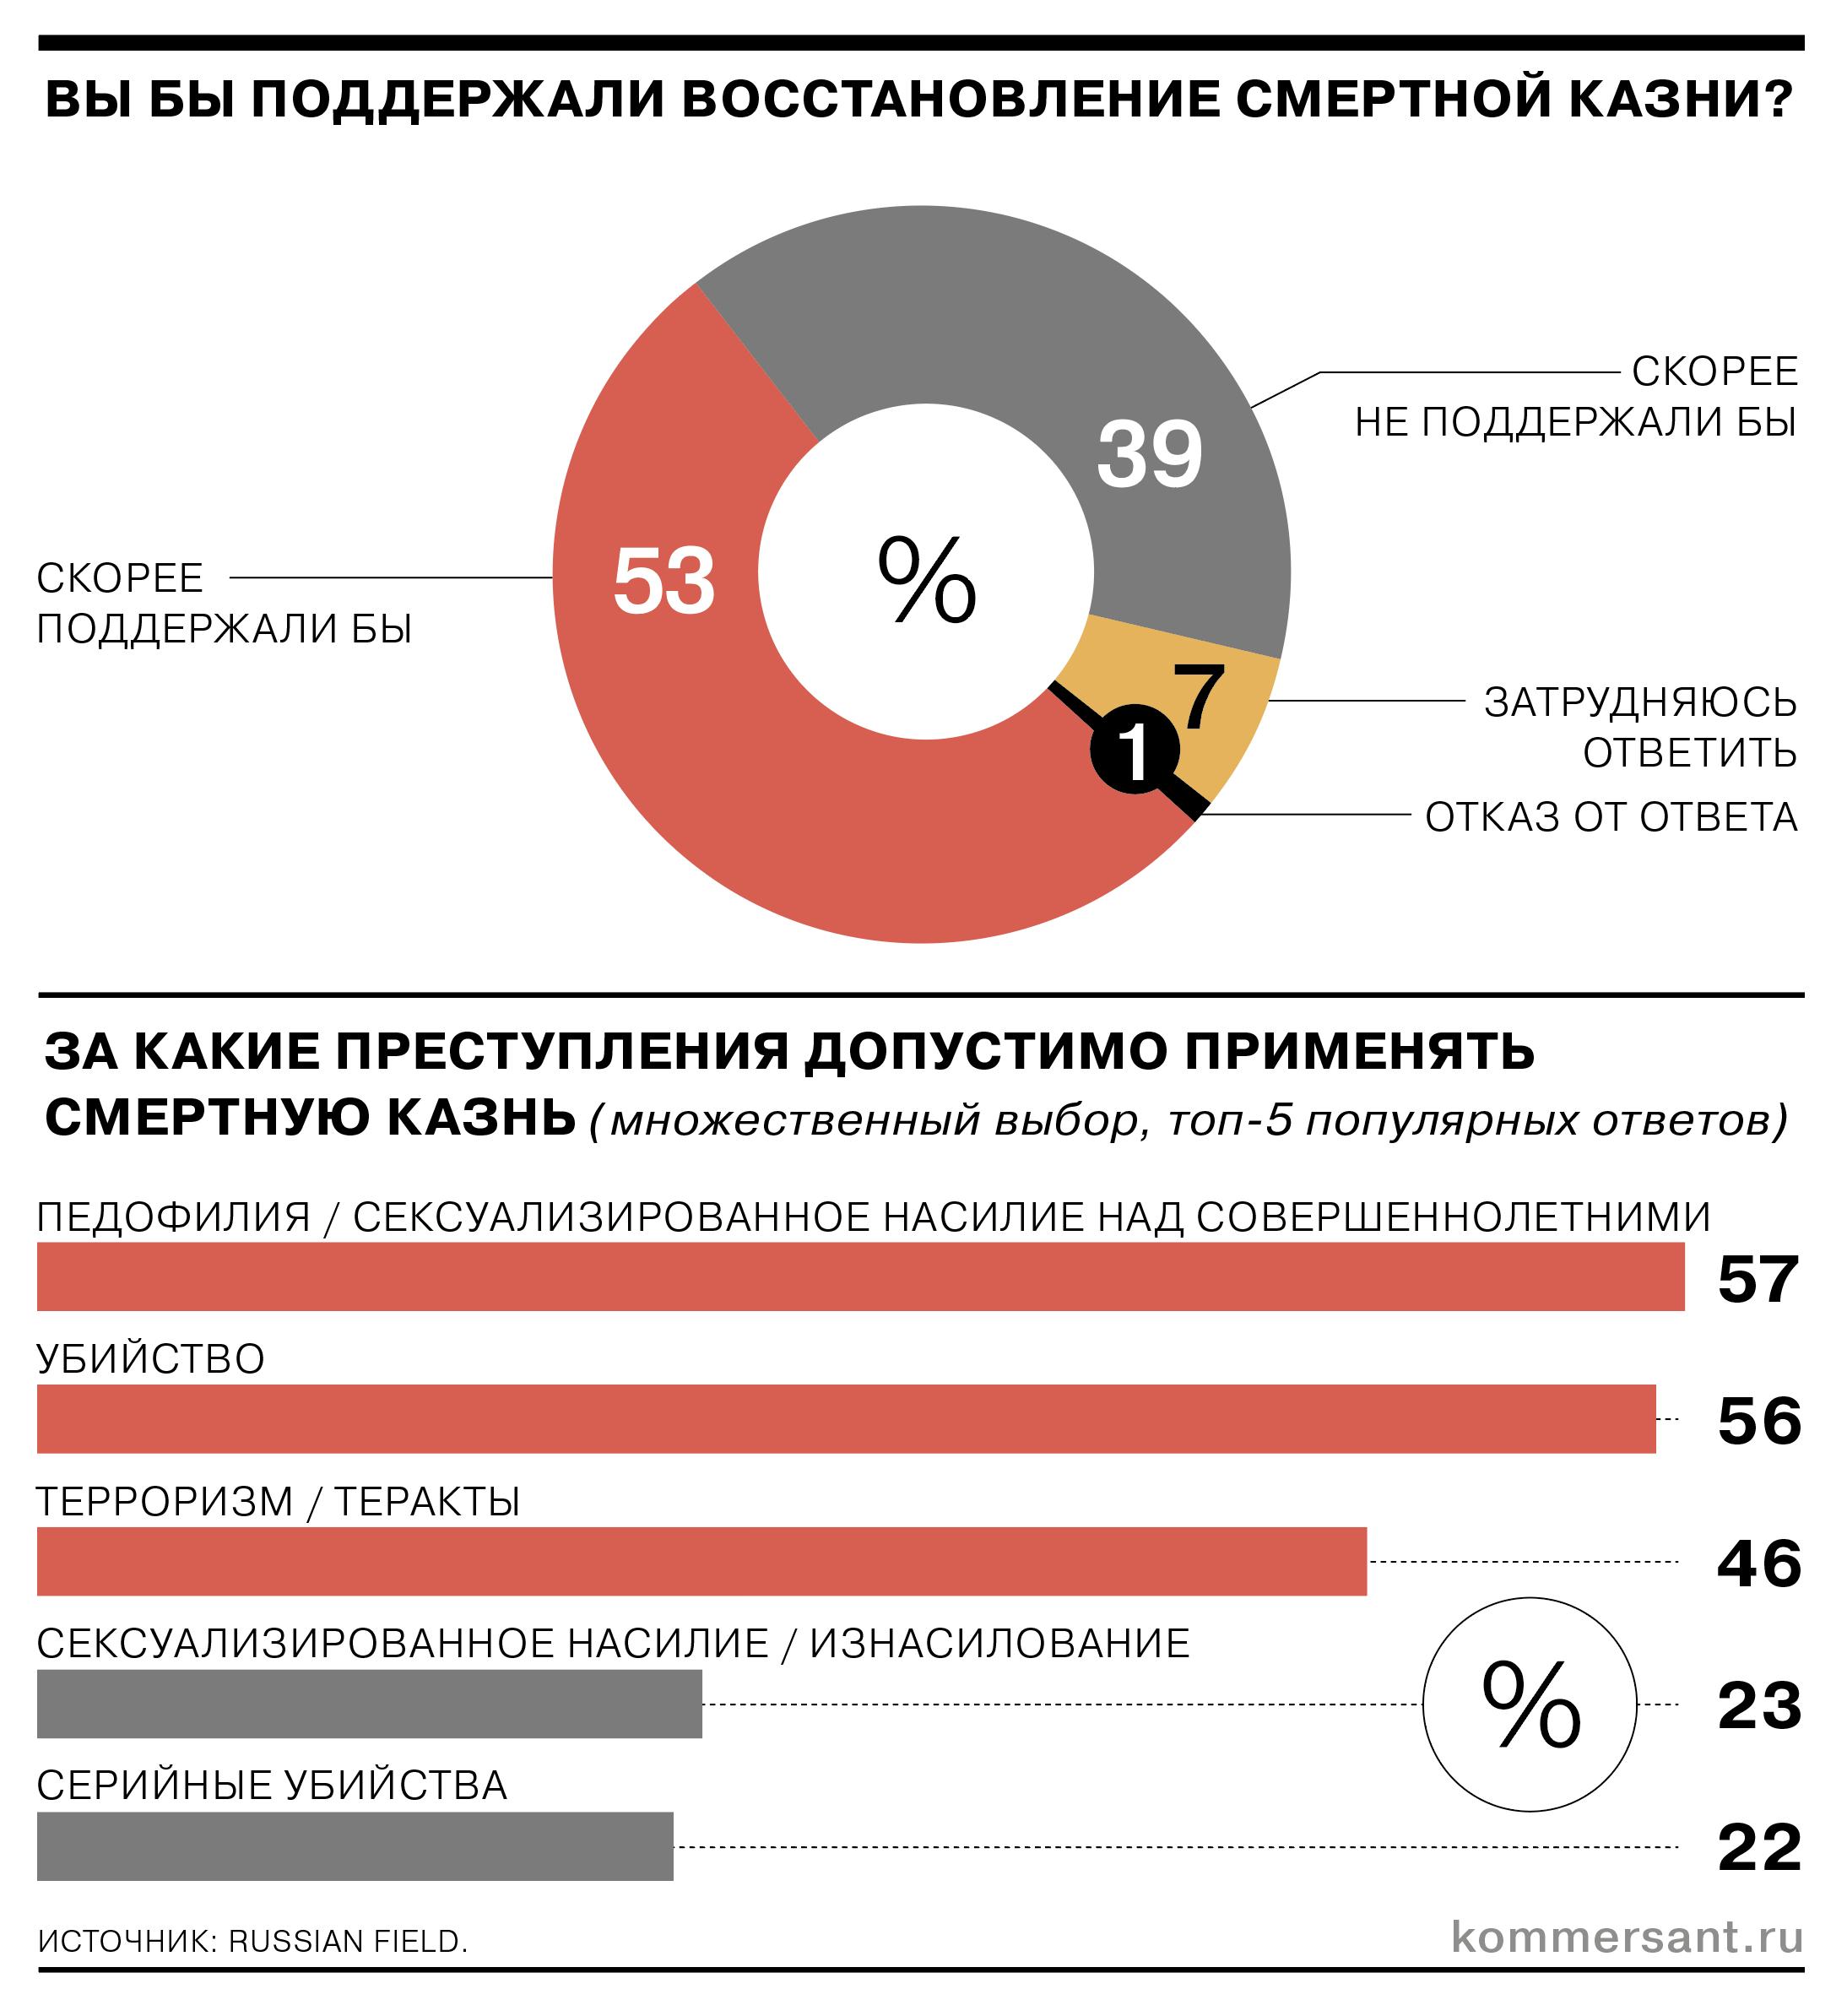 Каждый второй россиянин поддерживает восстановление смертной казни